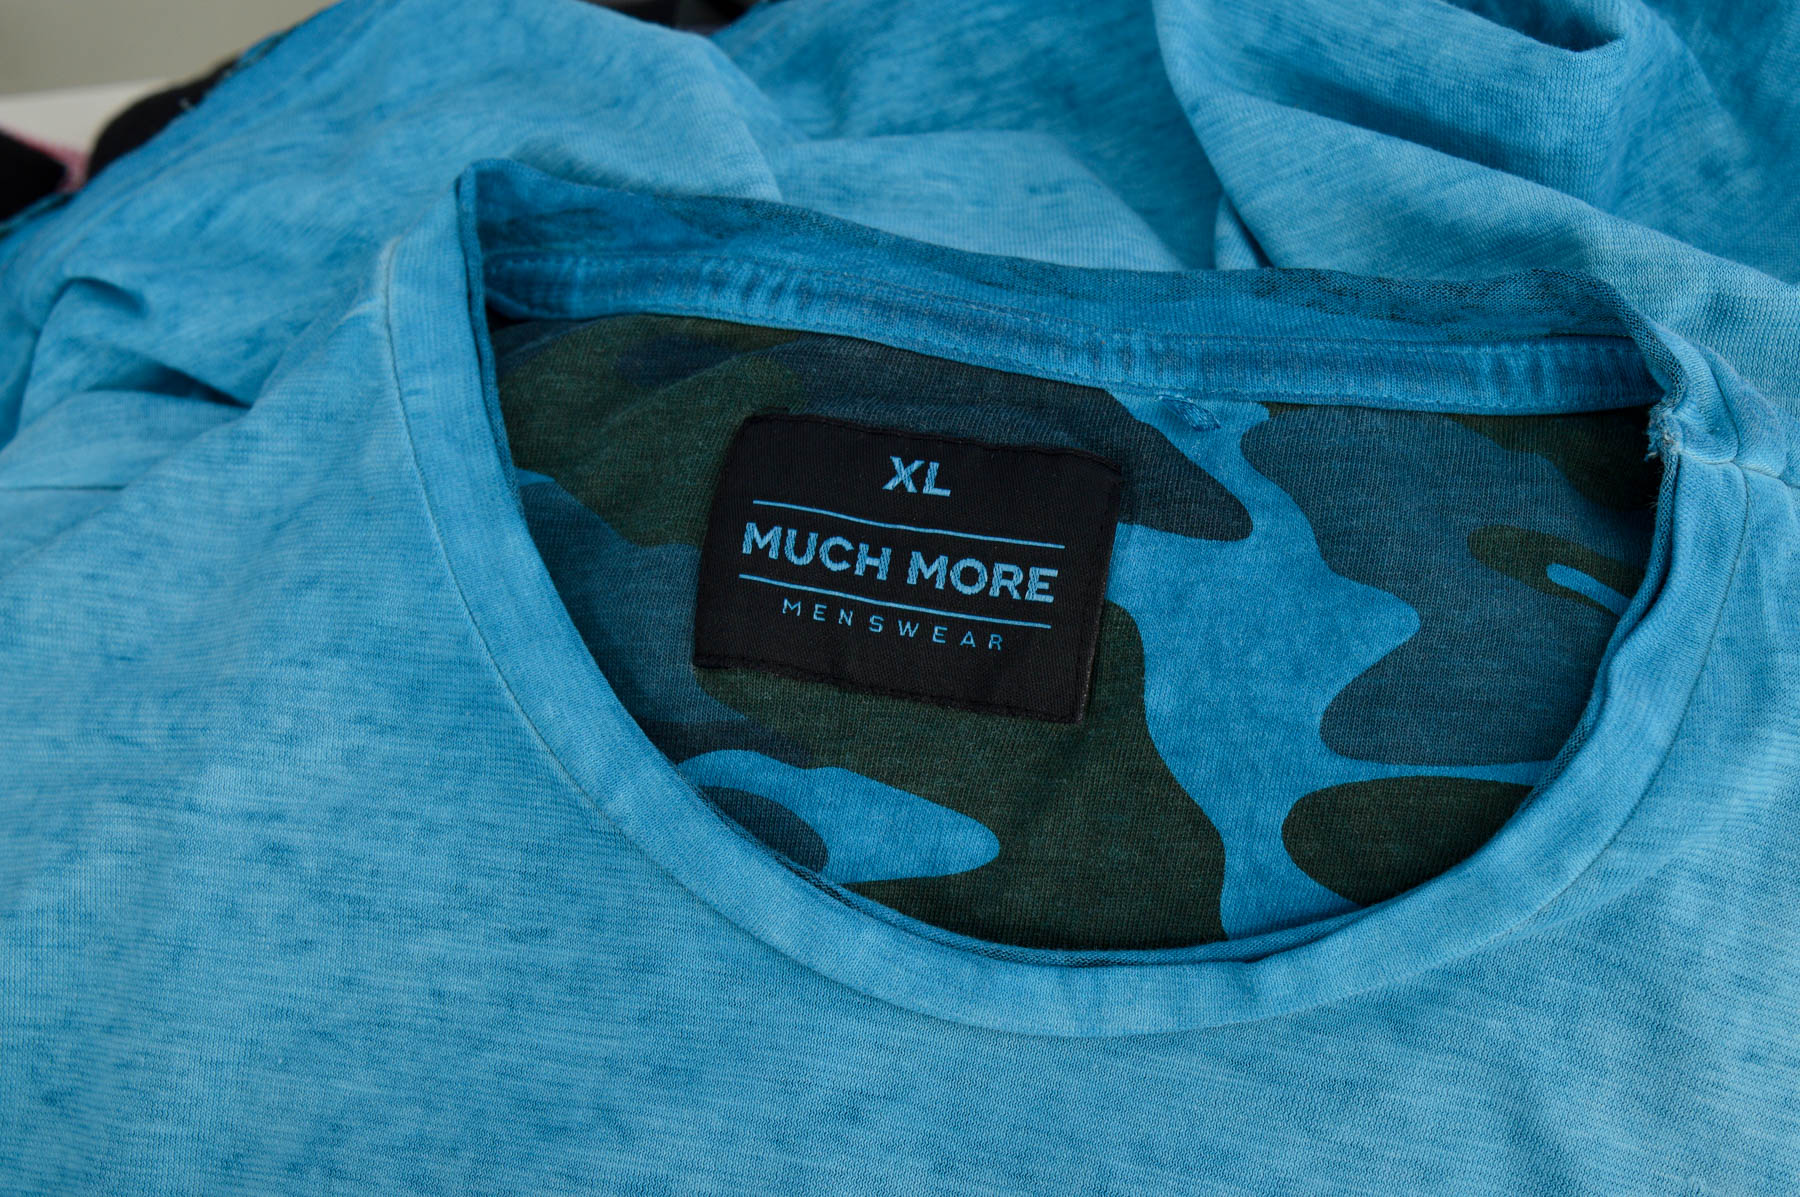 Αντρική μπλούζα - Much More - 2